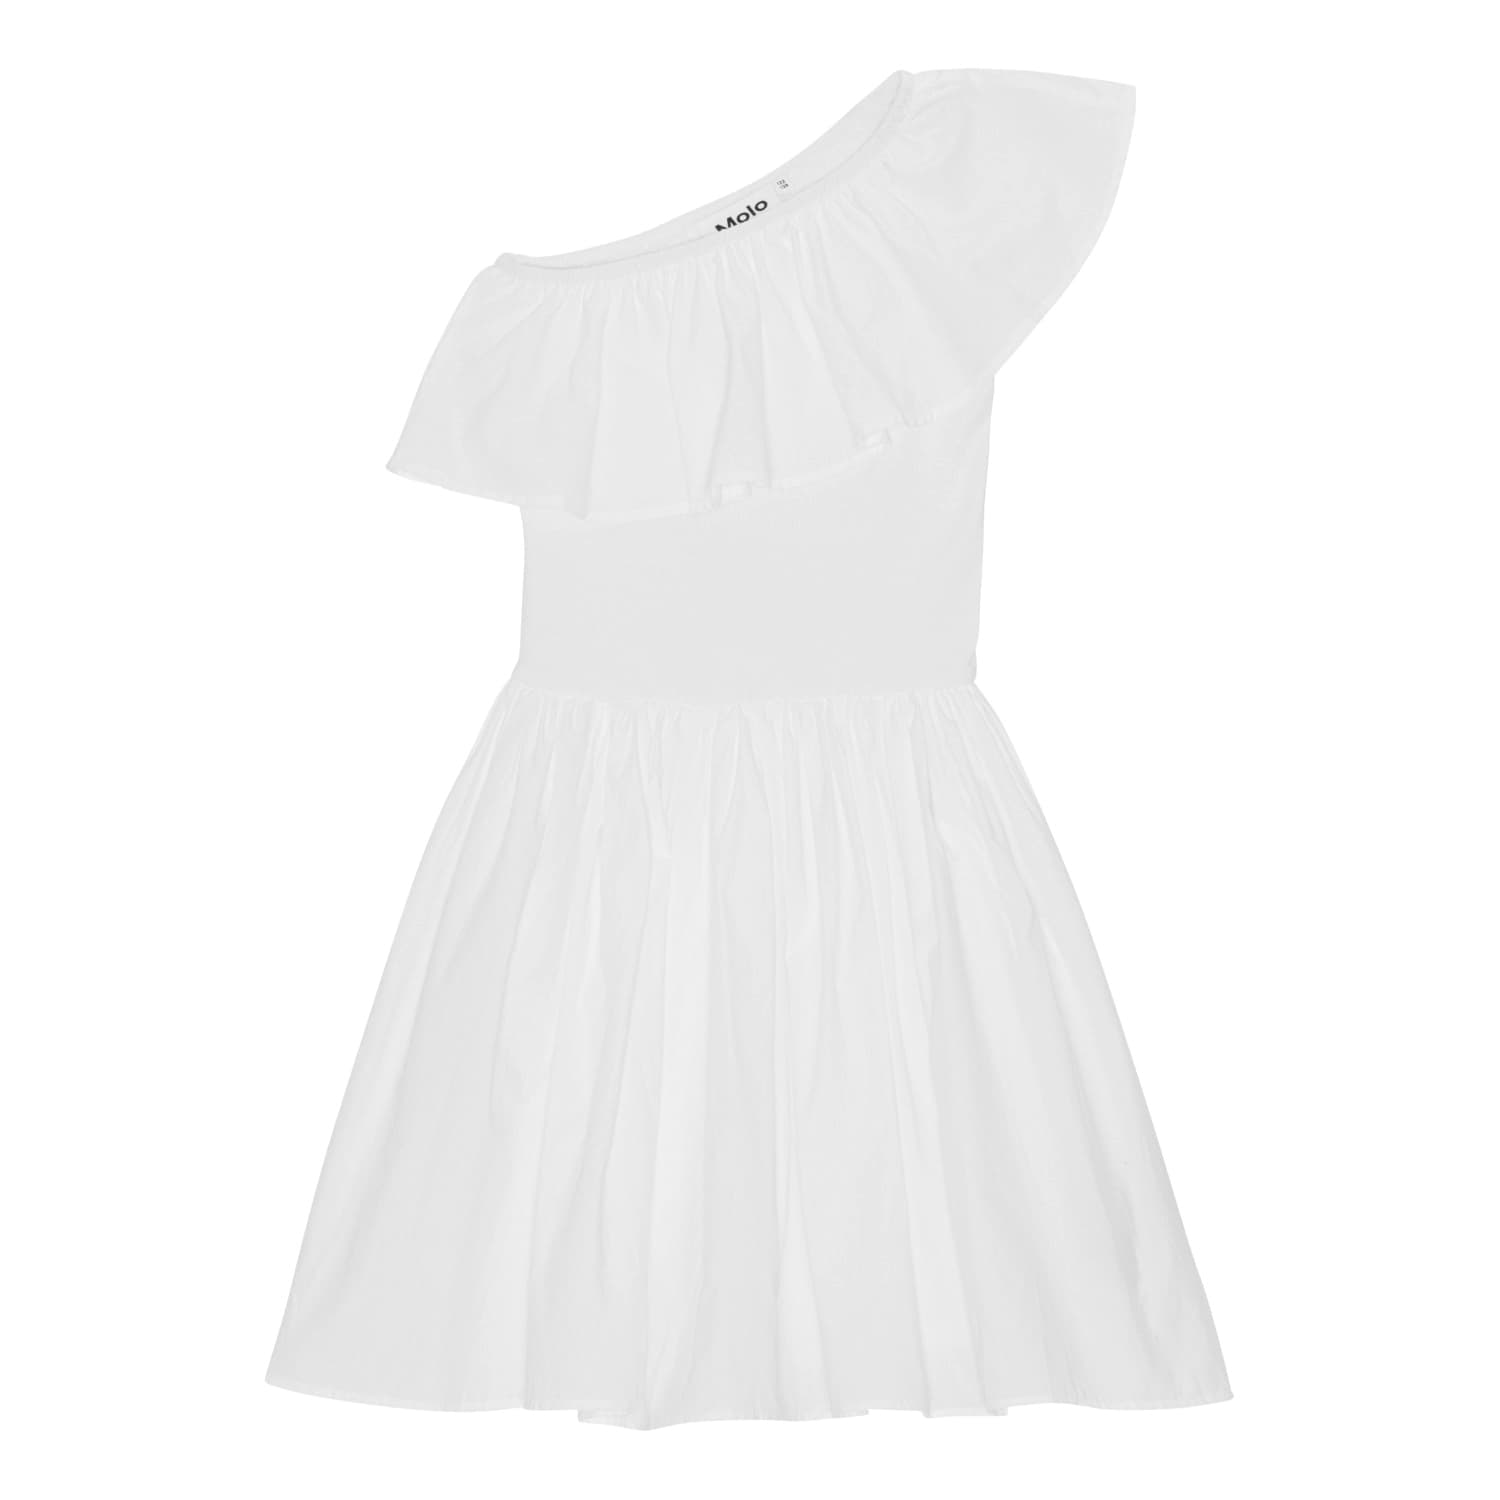 Chloey Dress (White)